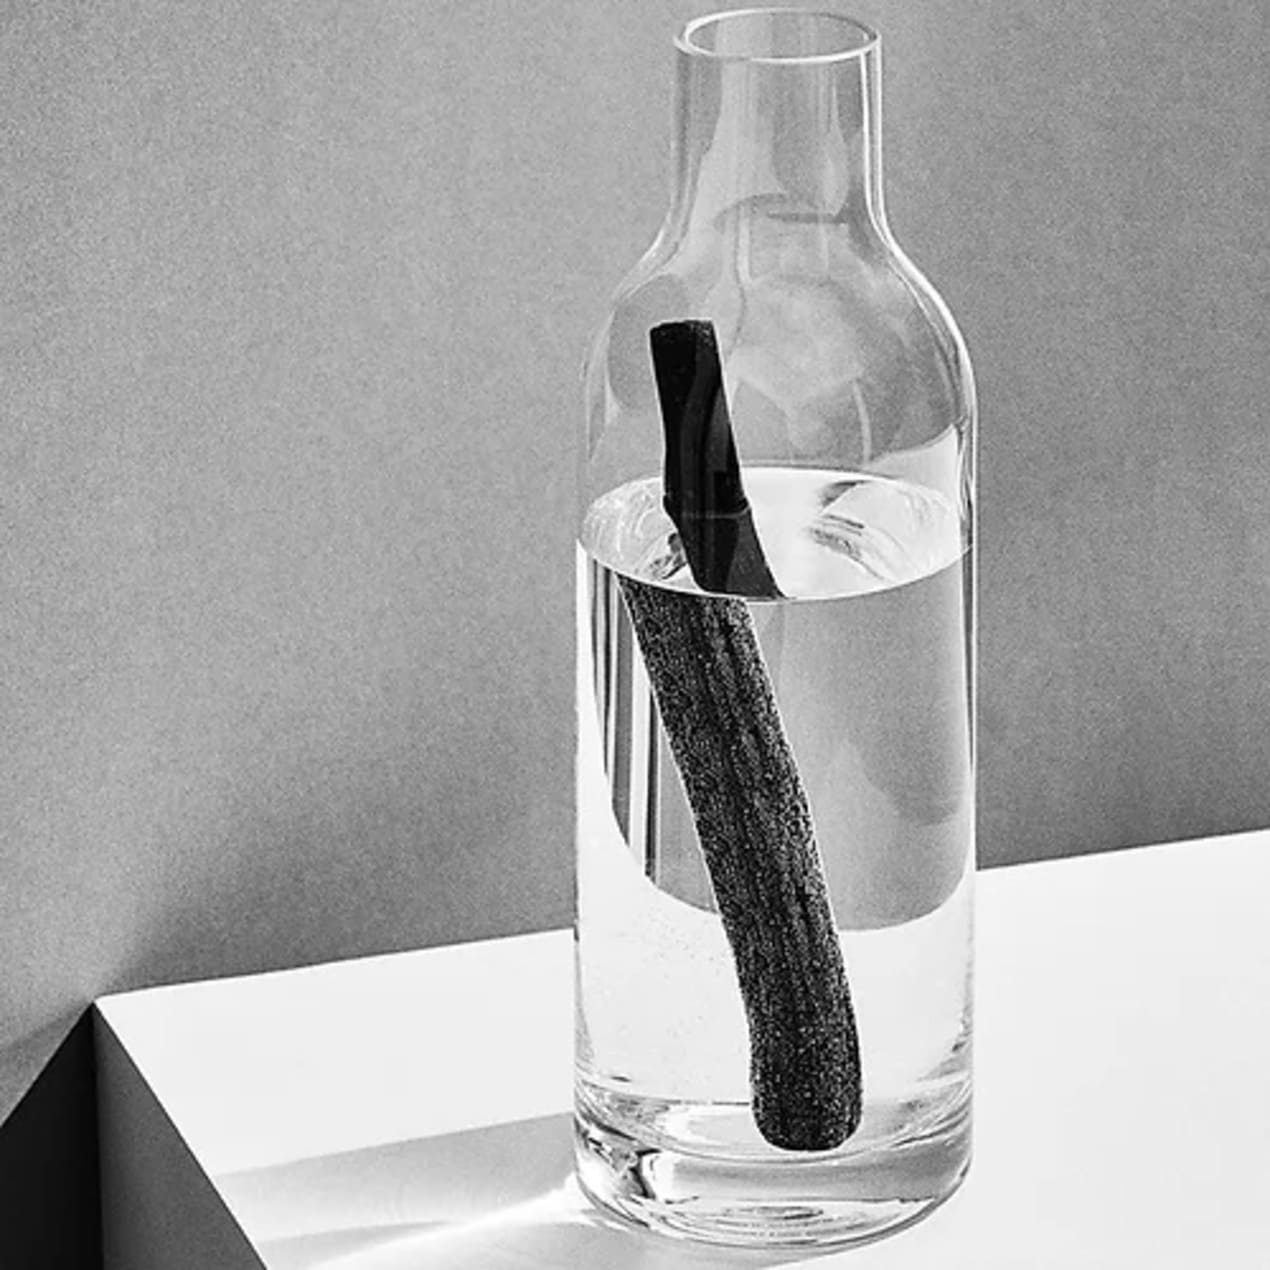 bouteille en verre remplie d'eau avec un baton de charbon à l'intérieur